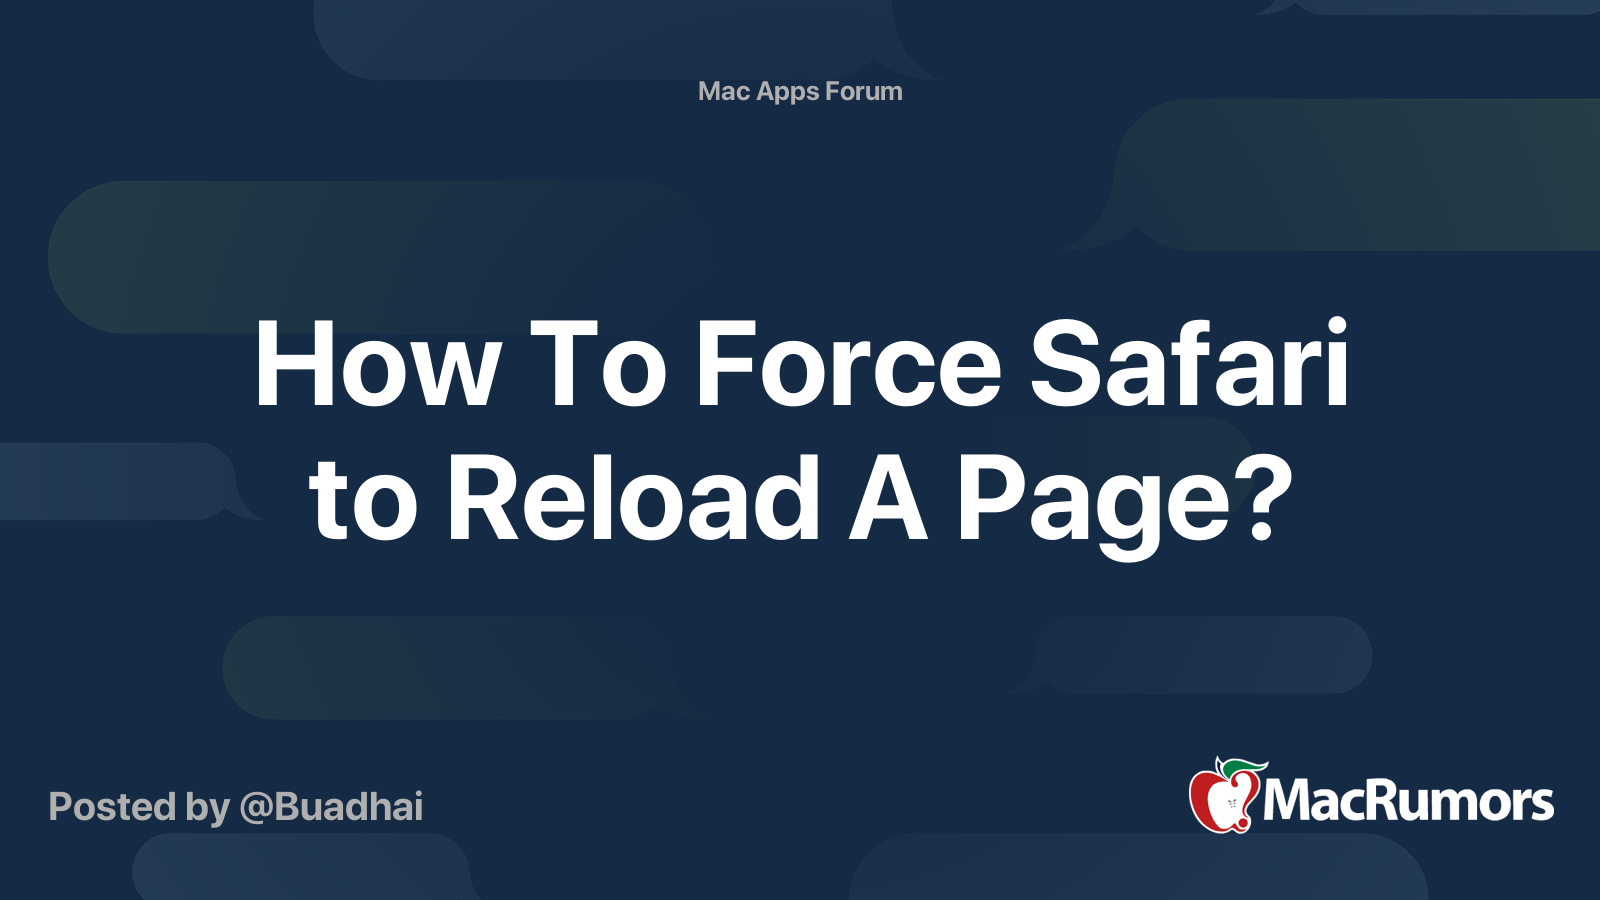 safari force reload javascript